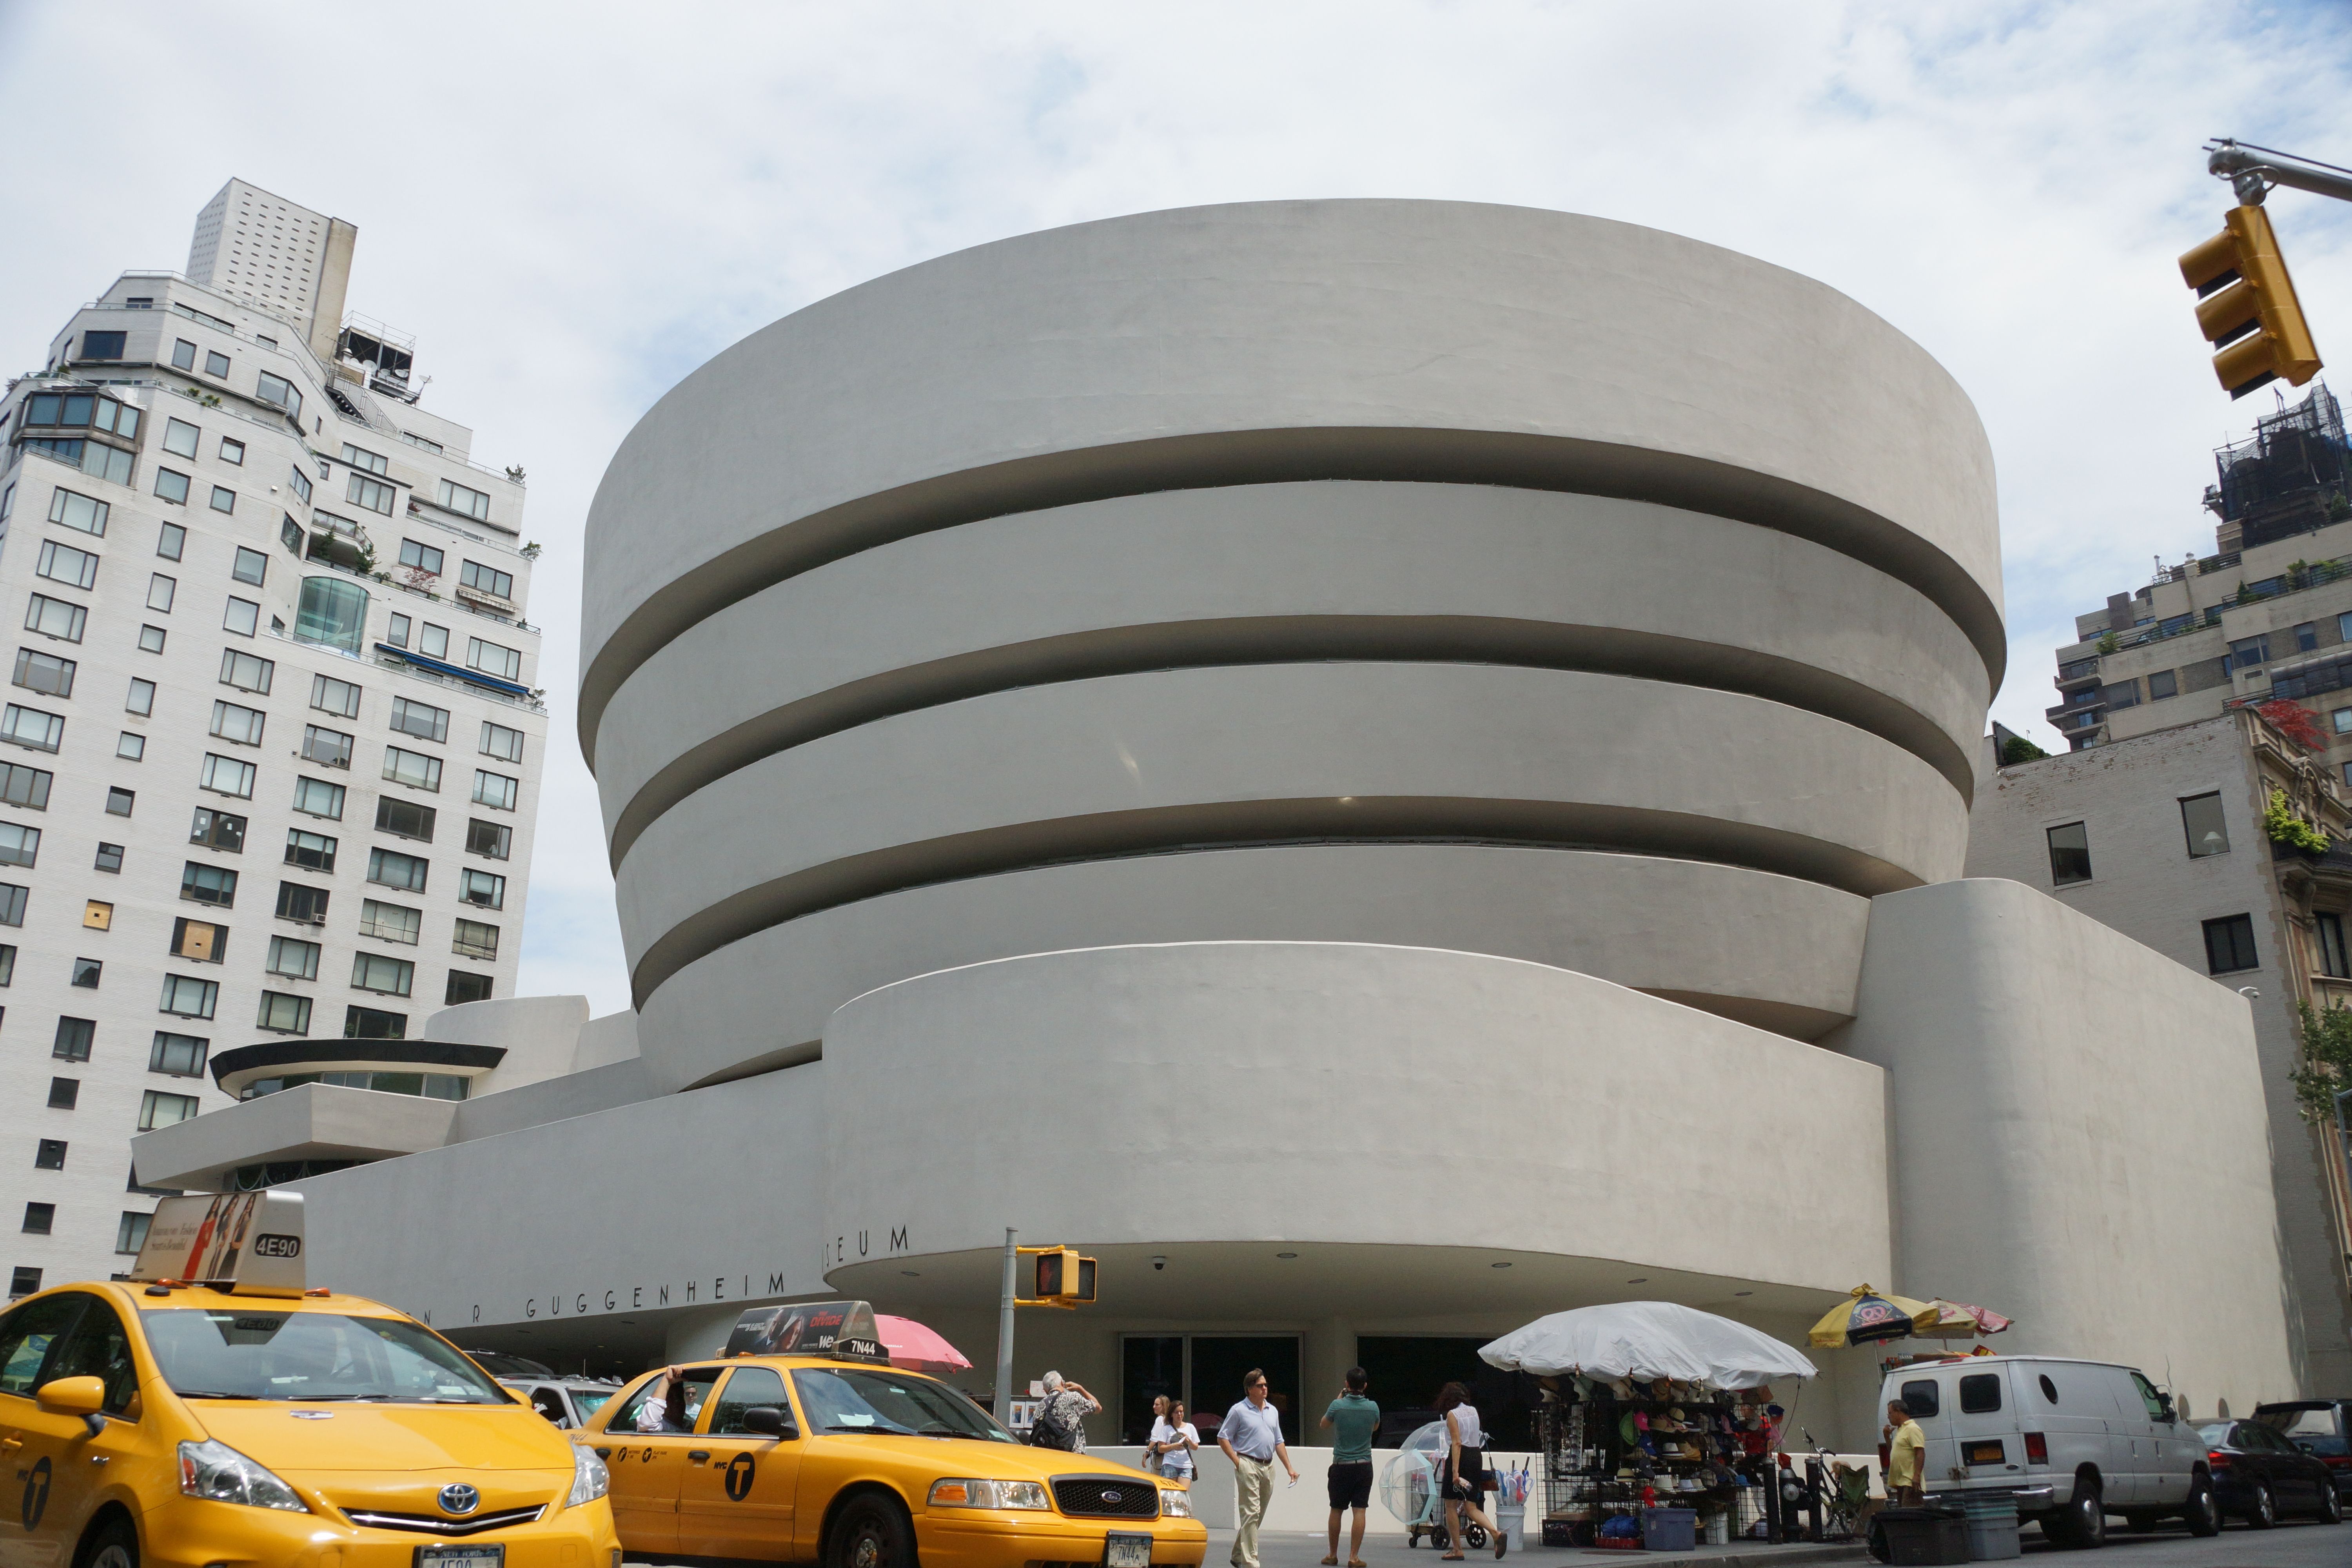 Image of Guggenheim mueseum nyc exterior.